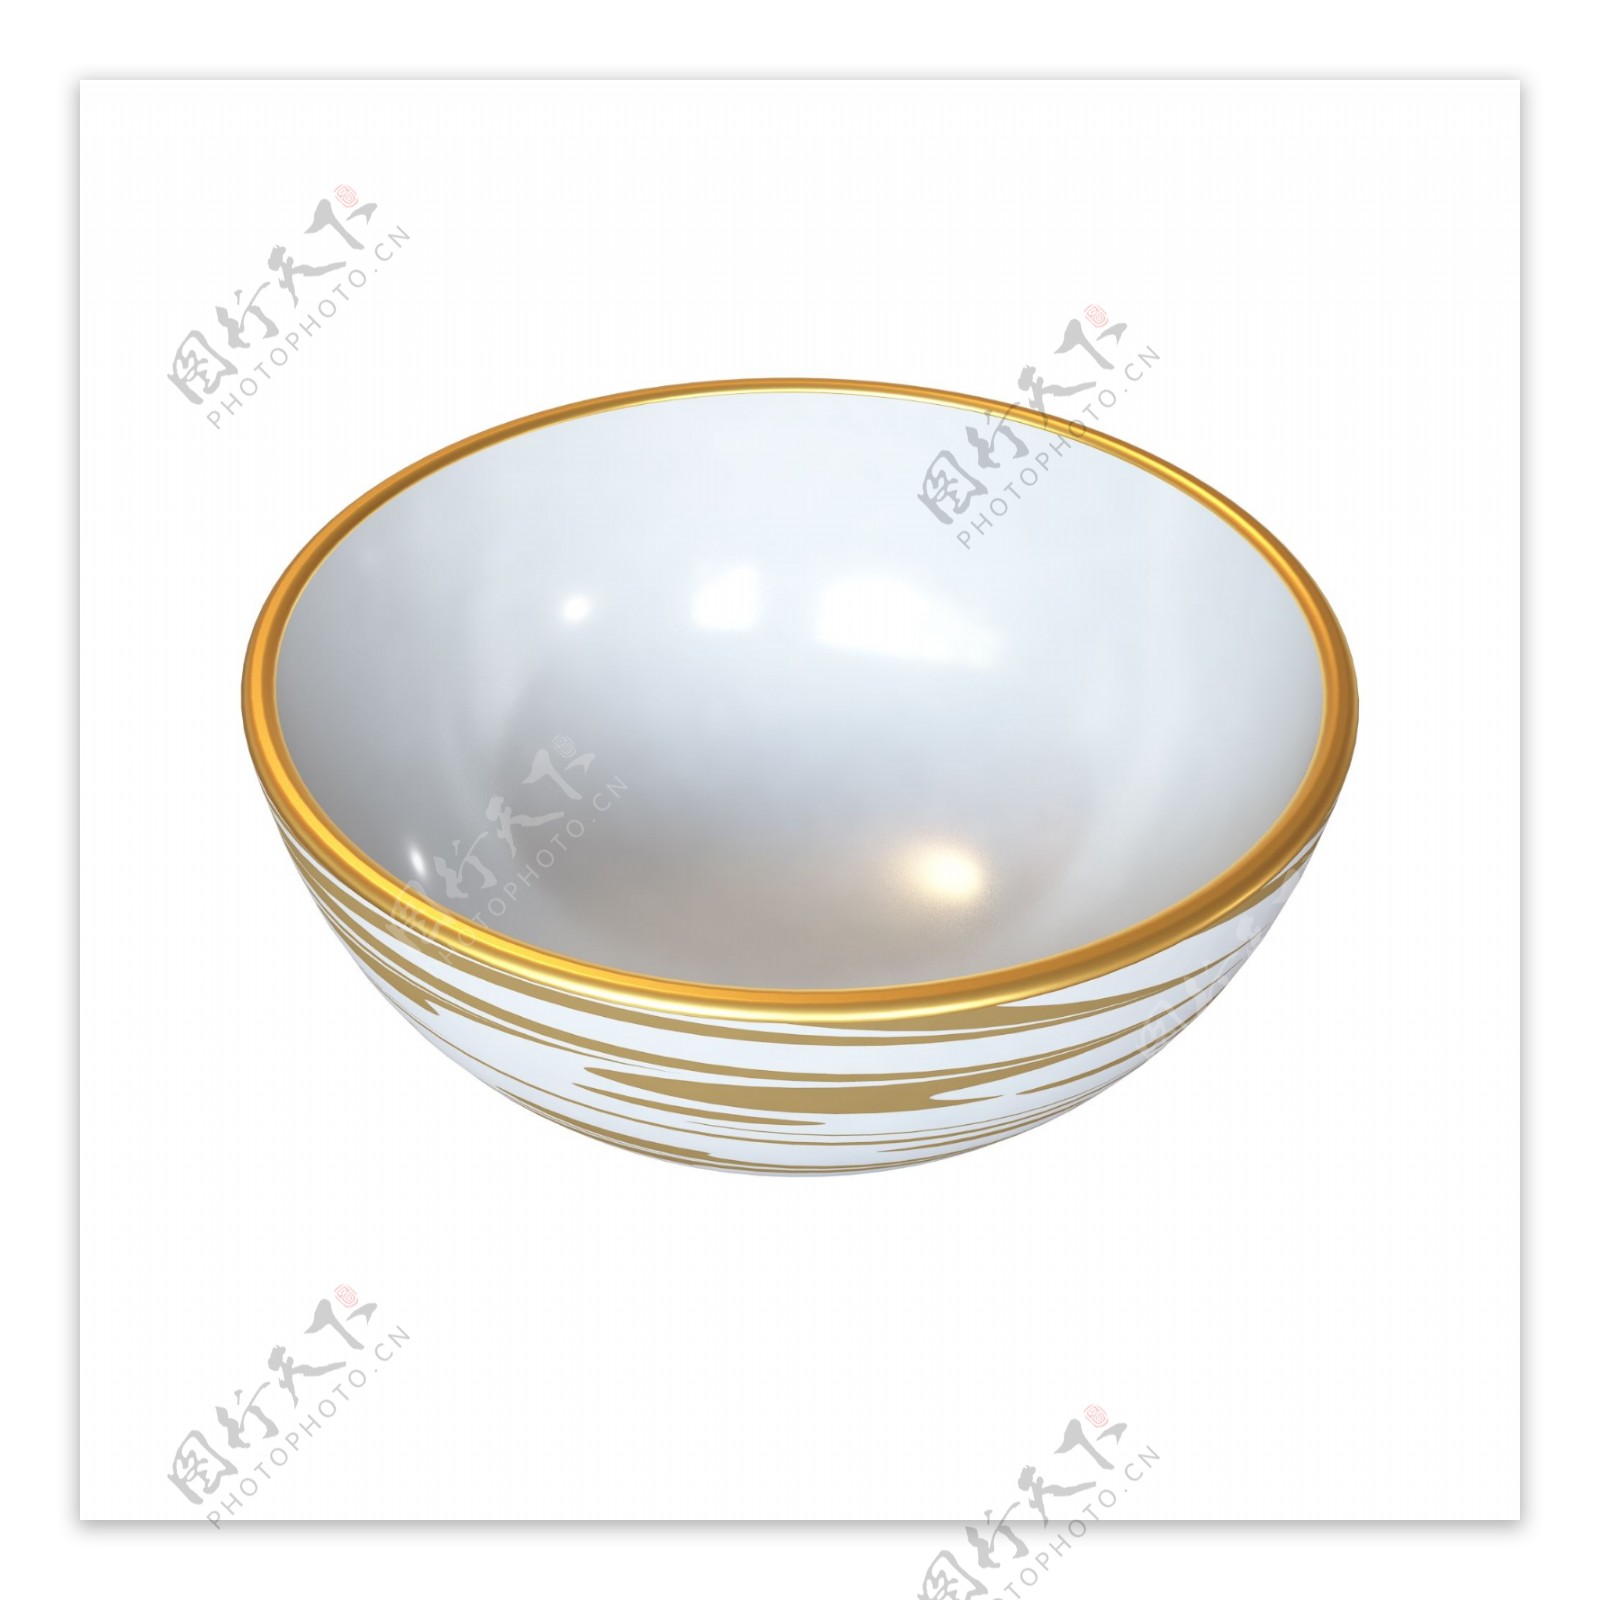 立体金边条纹瓷碗